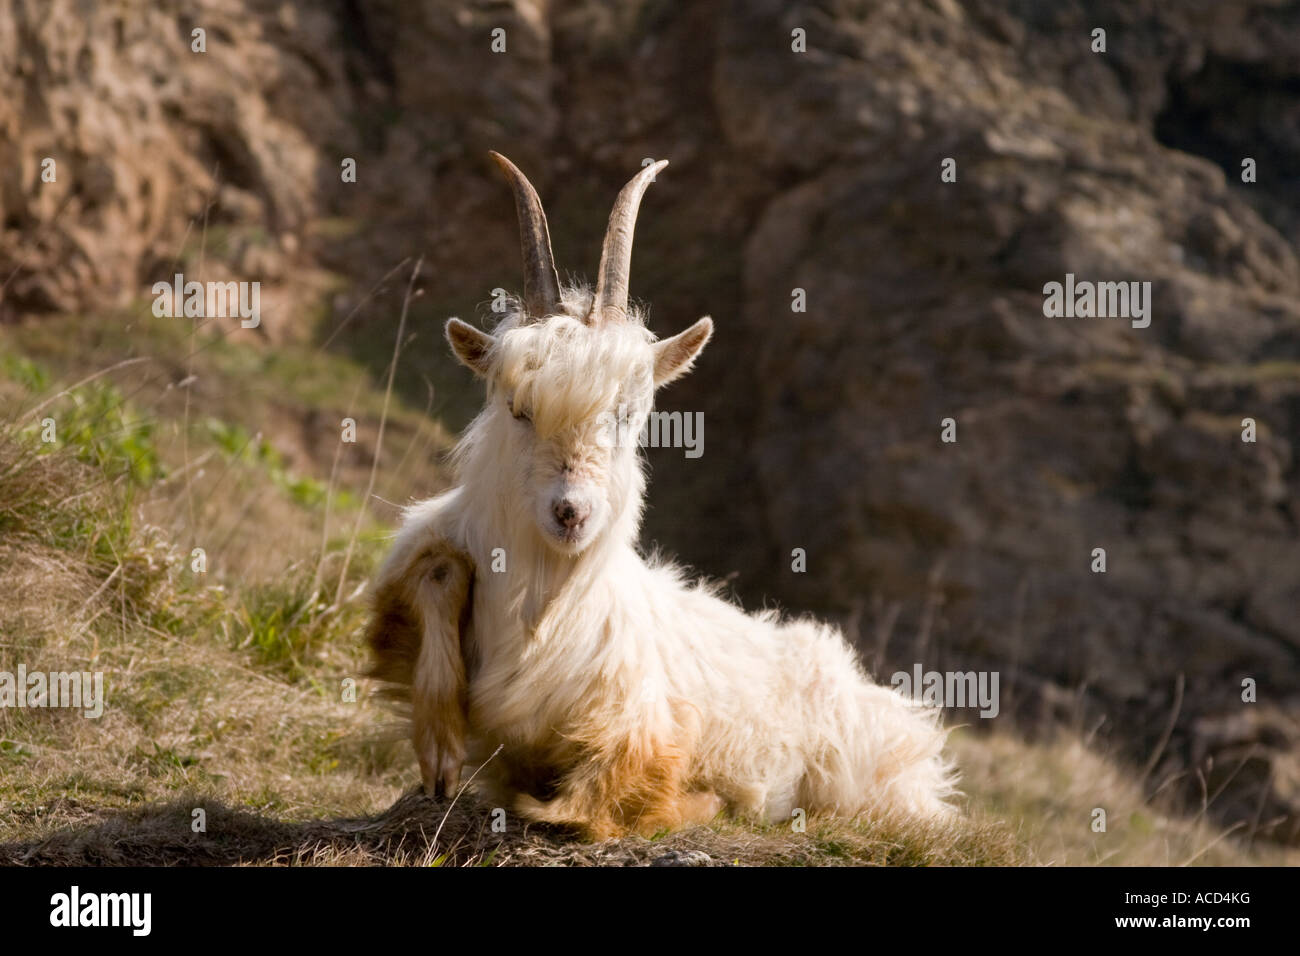 Le grand orme (Pen-y-Gogarth) Chèvre des montagnes du Cachemire dont les ancêtres aurait sillonné les montagnes du nord de l'Inde Banque D'Images